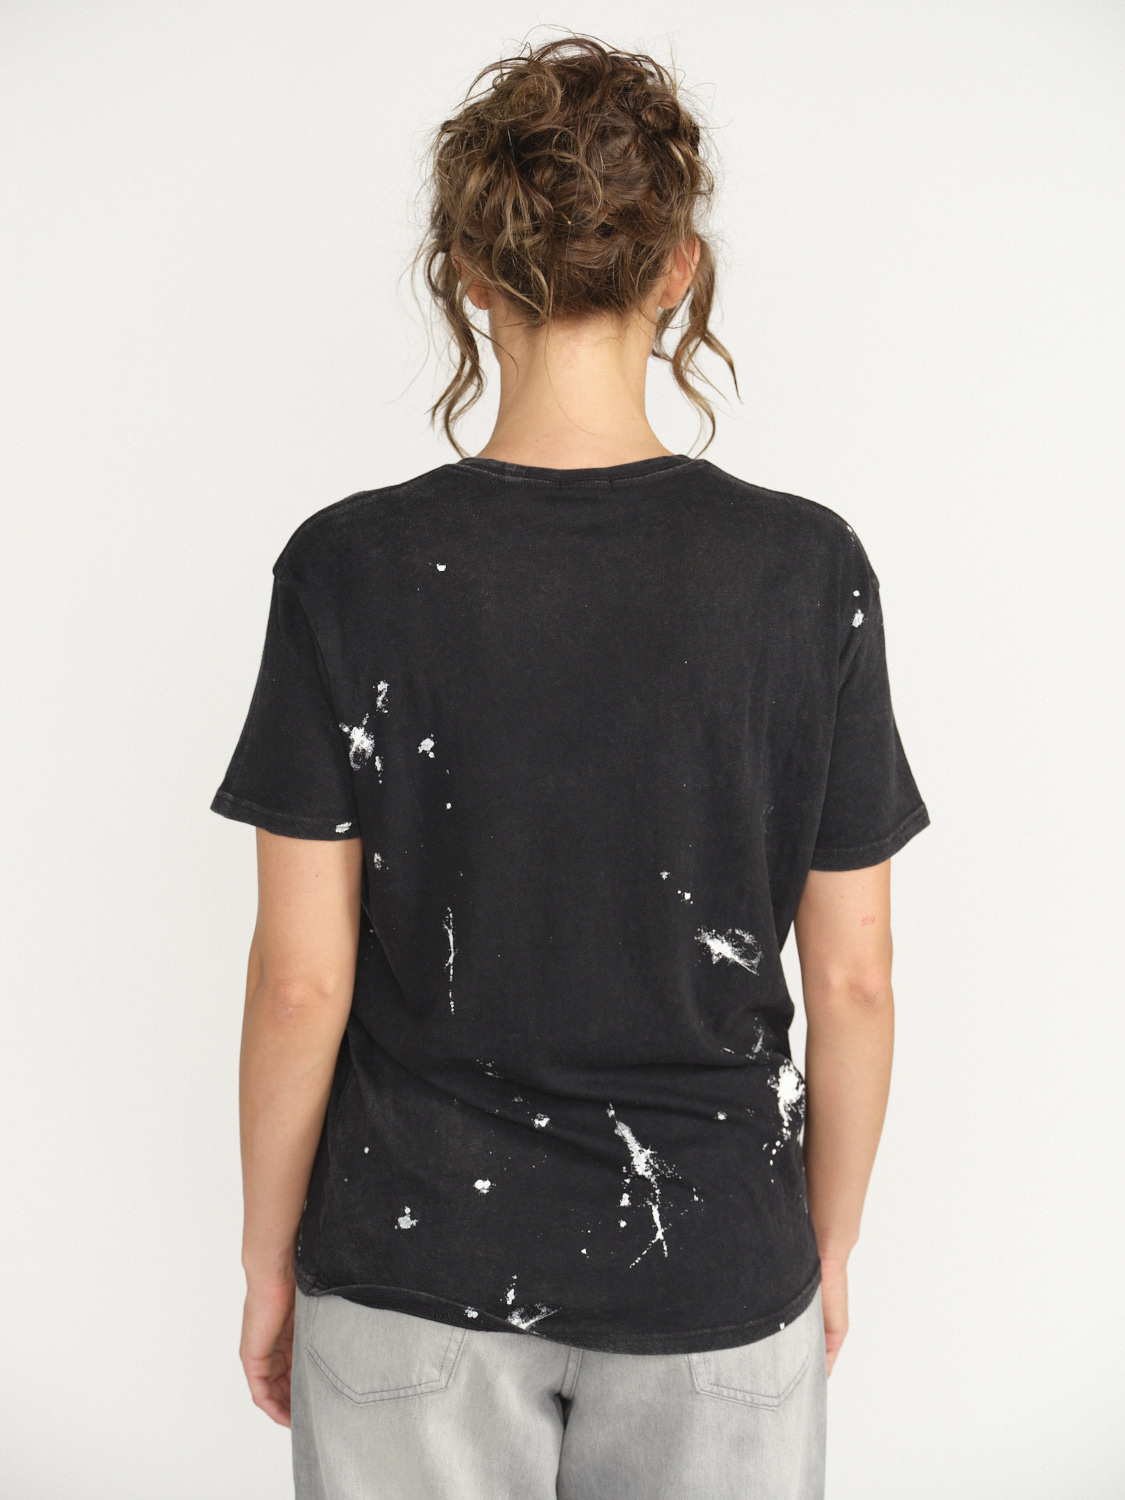 R13 New York Boy T-Shirt - Splatter shirt made of cotton  black M